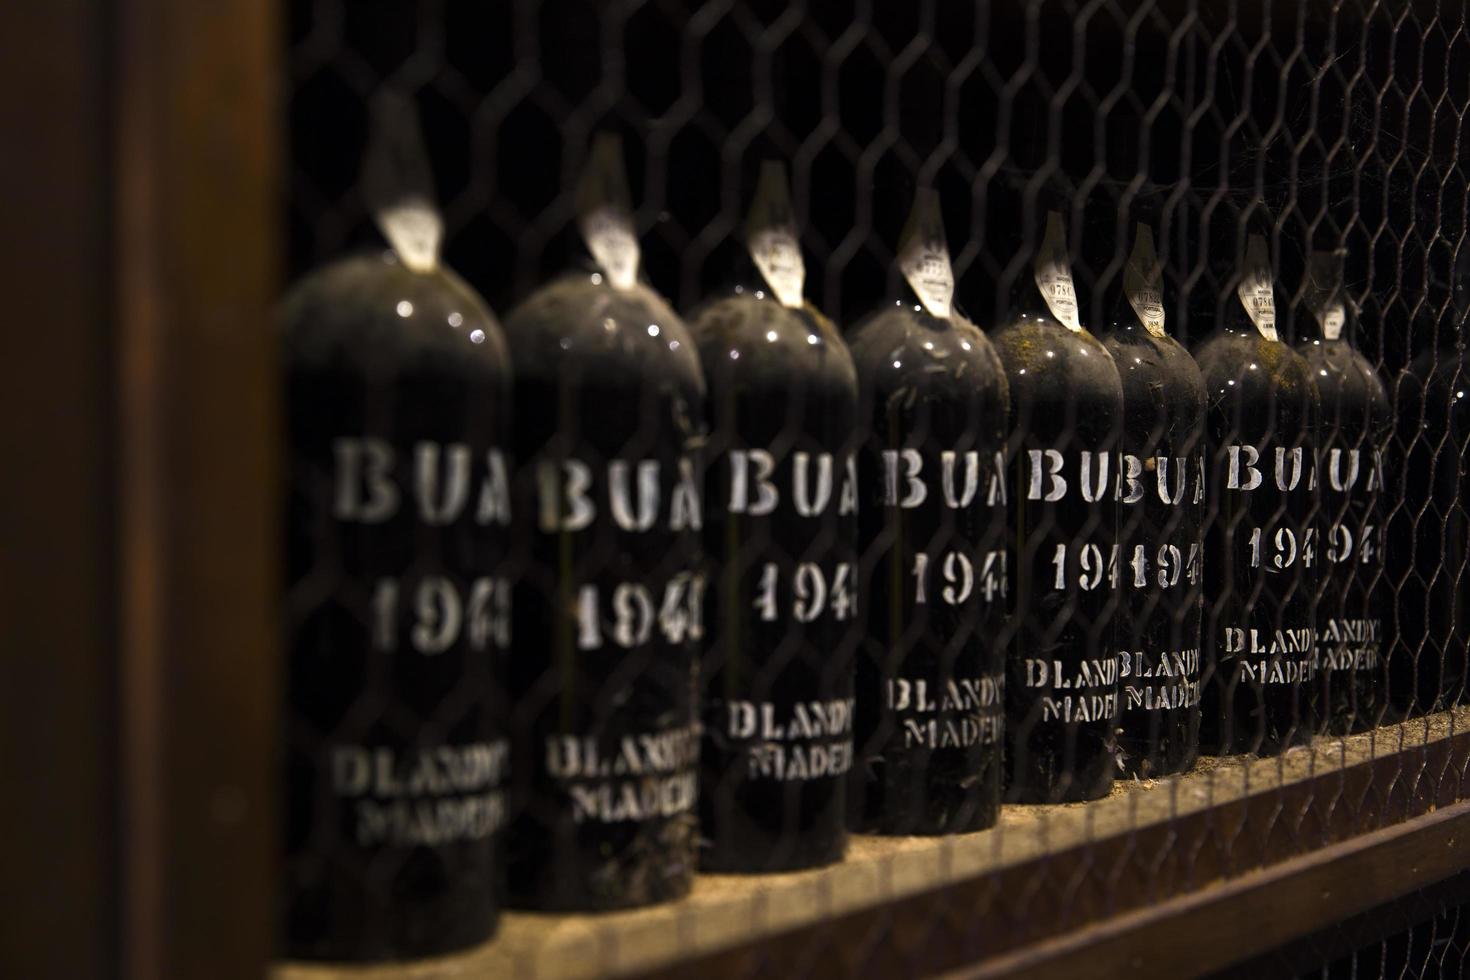 madeira, portugal, 2020 - detalj av blandys vinlagring av vintage madeiravin i portugal. det är ett familjeägt vinföretag som grundades av john blandy 1811. foto